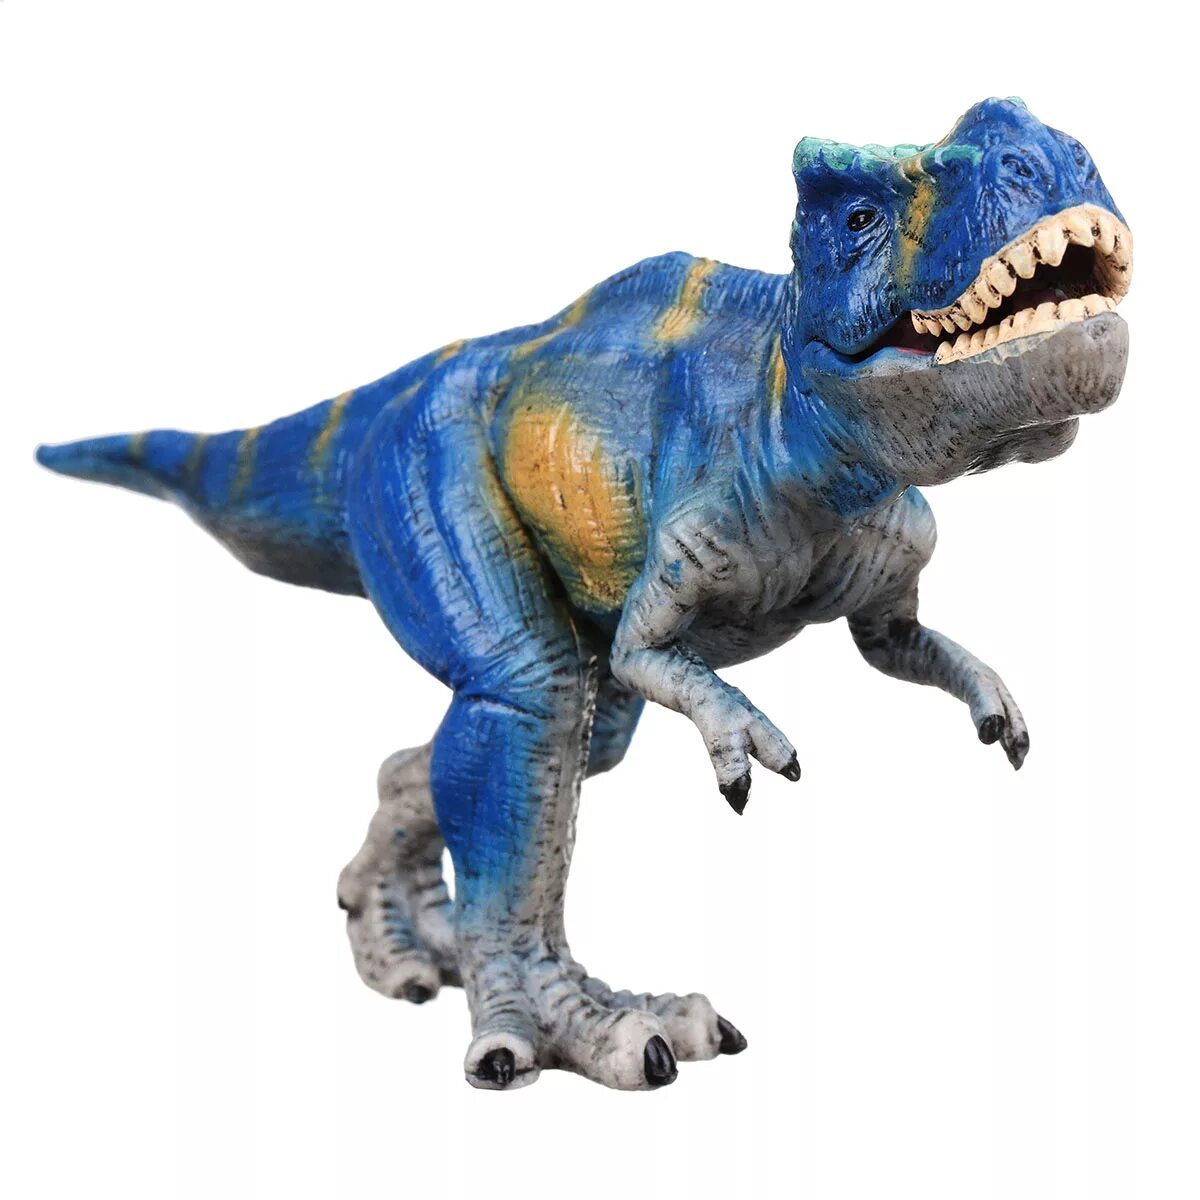 Игрушка динозавр. Игрушечные динозавры. Динозавр рекс. Игрушки игрушки динозавр рекс.